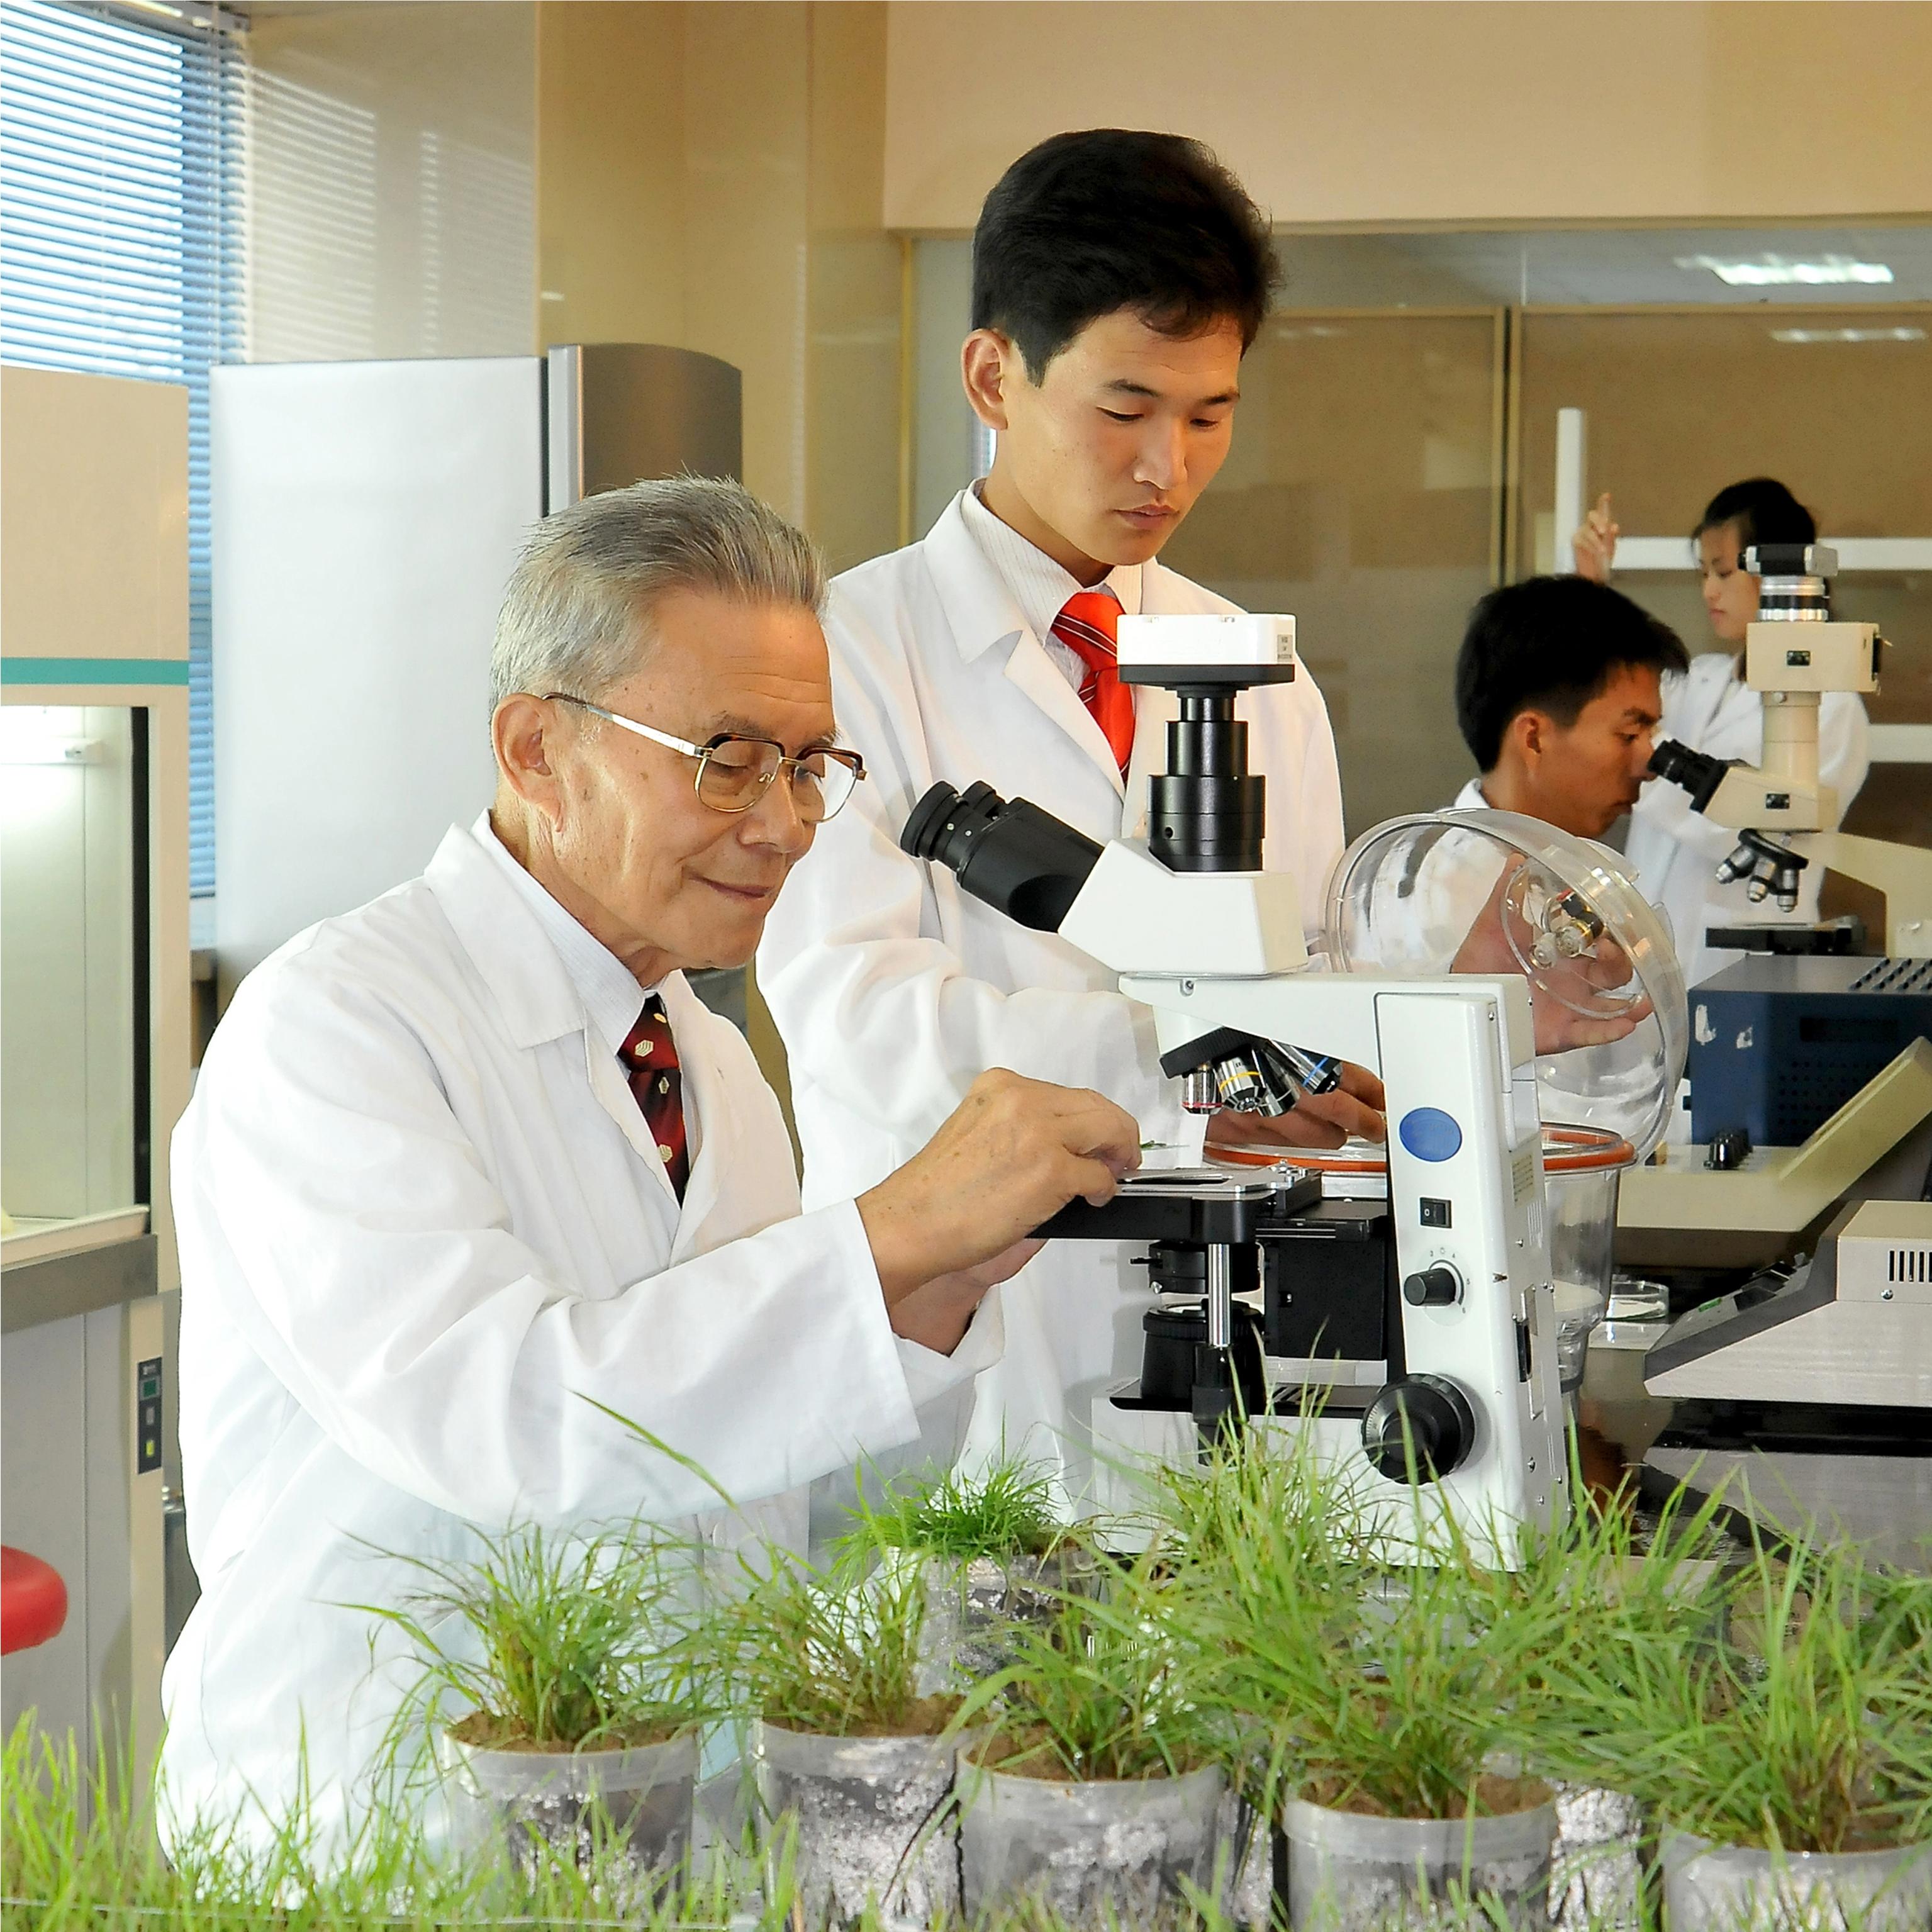 الباحثون في كوريا يحققون نجاحا بأستخدام تكنولوجيا النانو في مجال الزراعة